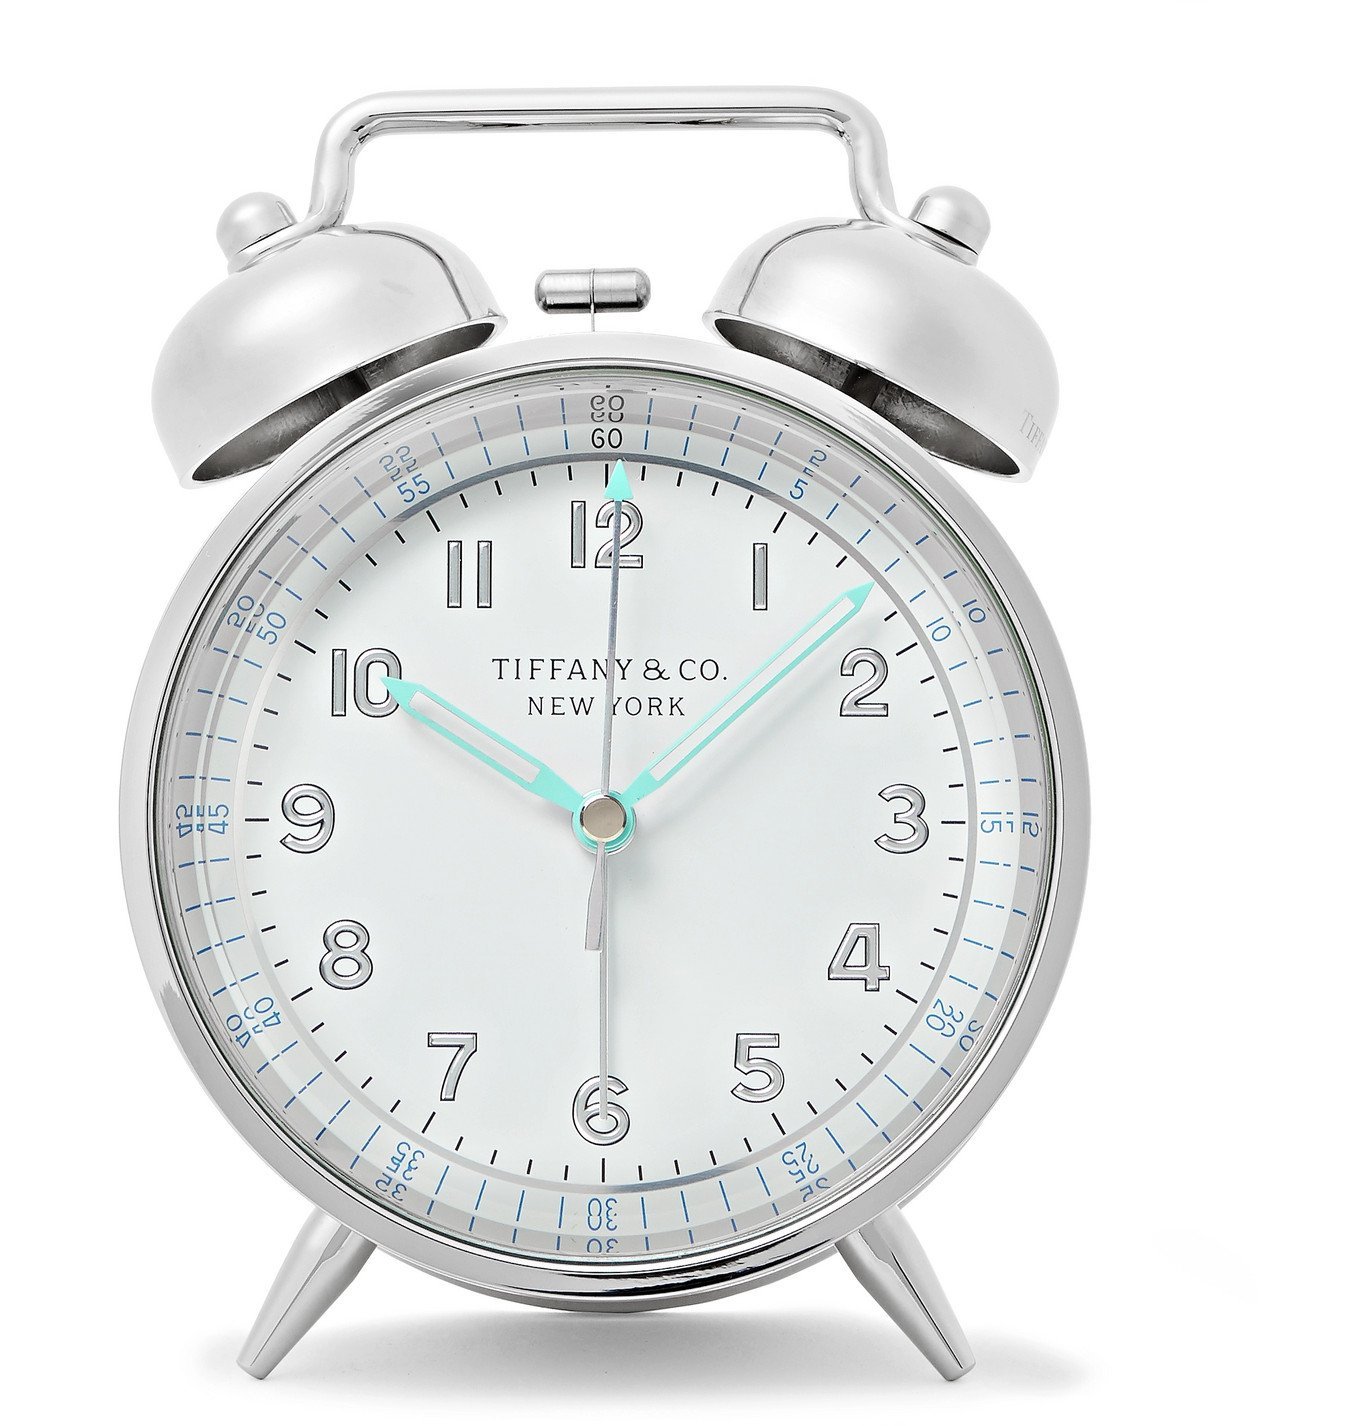 tiffany & co alarm clock